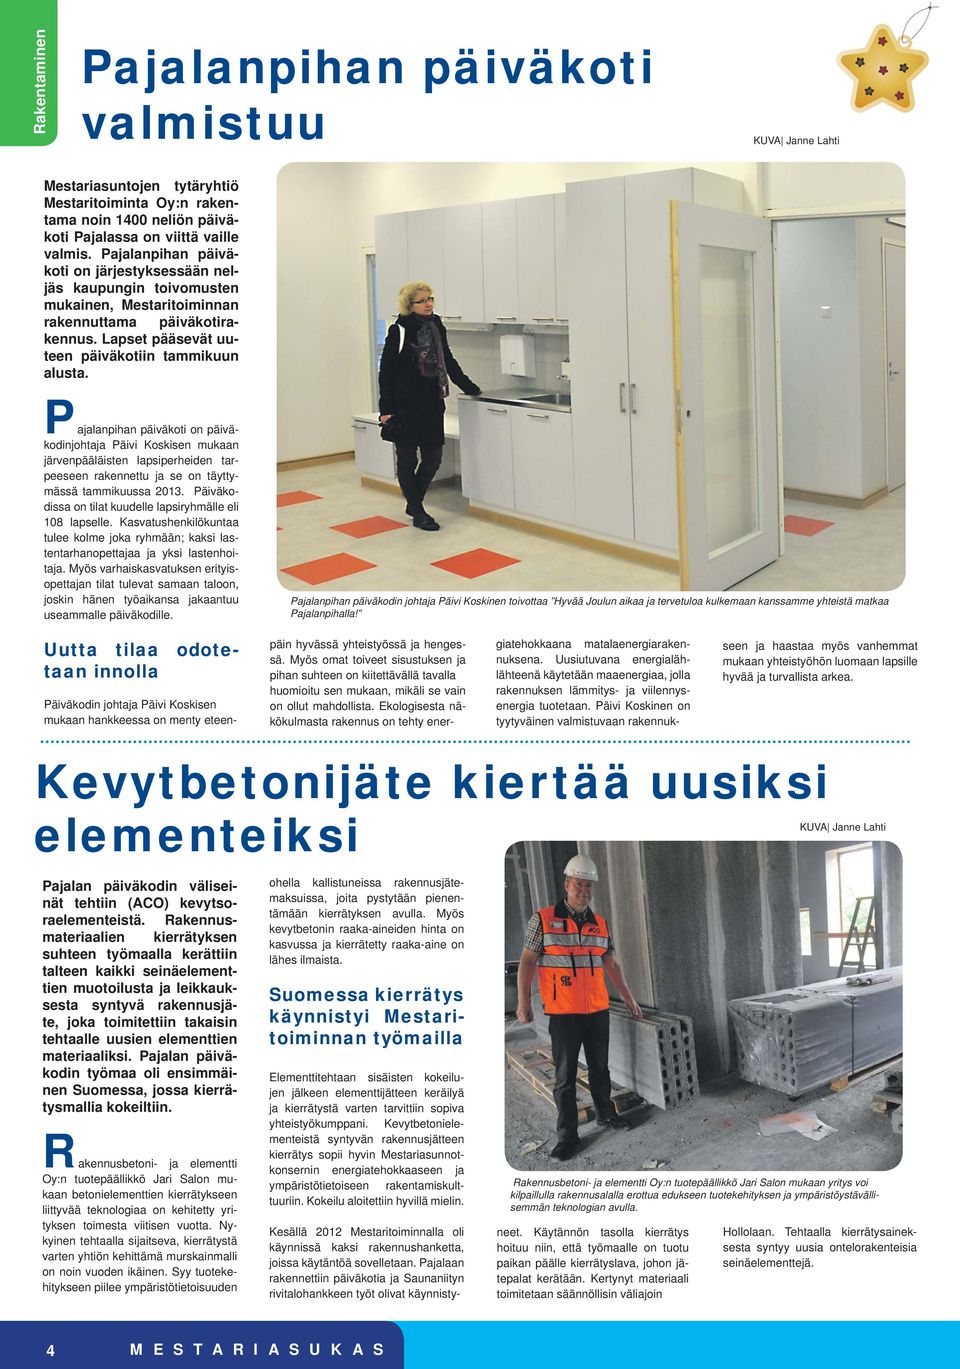 Pajalanpihan päiväkoti on päiväkodinjohtaja Päivi Koskisen mukaan järvenpääläisten lapsiperheiden tarpeeseen rakennettu ja se on täyttymässä tammikuussa 2013.